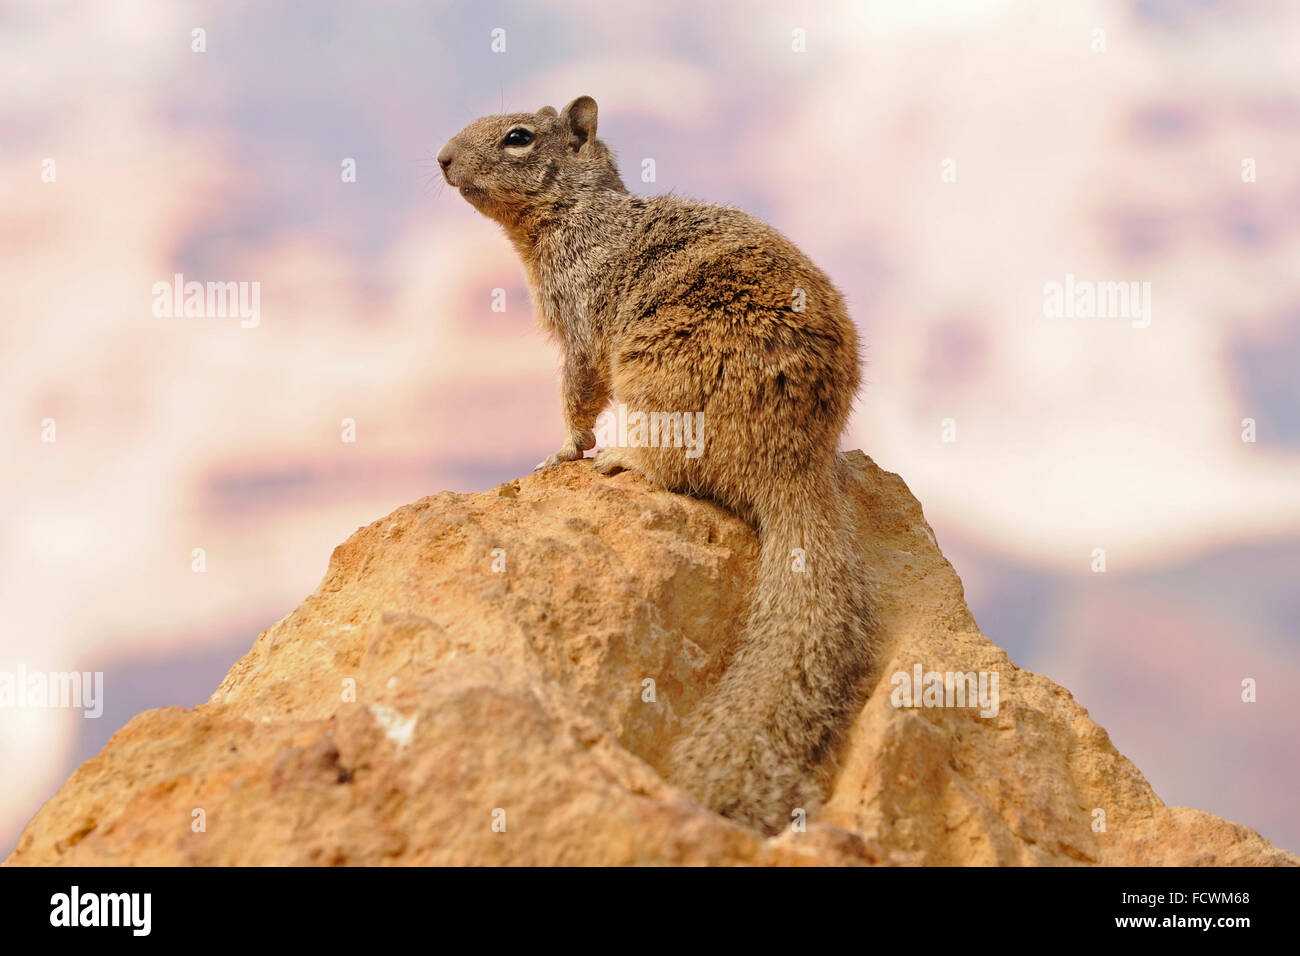 Grand Canyon Rock Squirrel avec le Grand Canyon derrière (Spermophilus variegatus) Banque D'Images